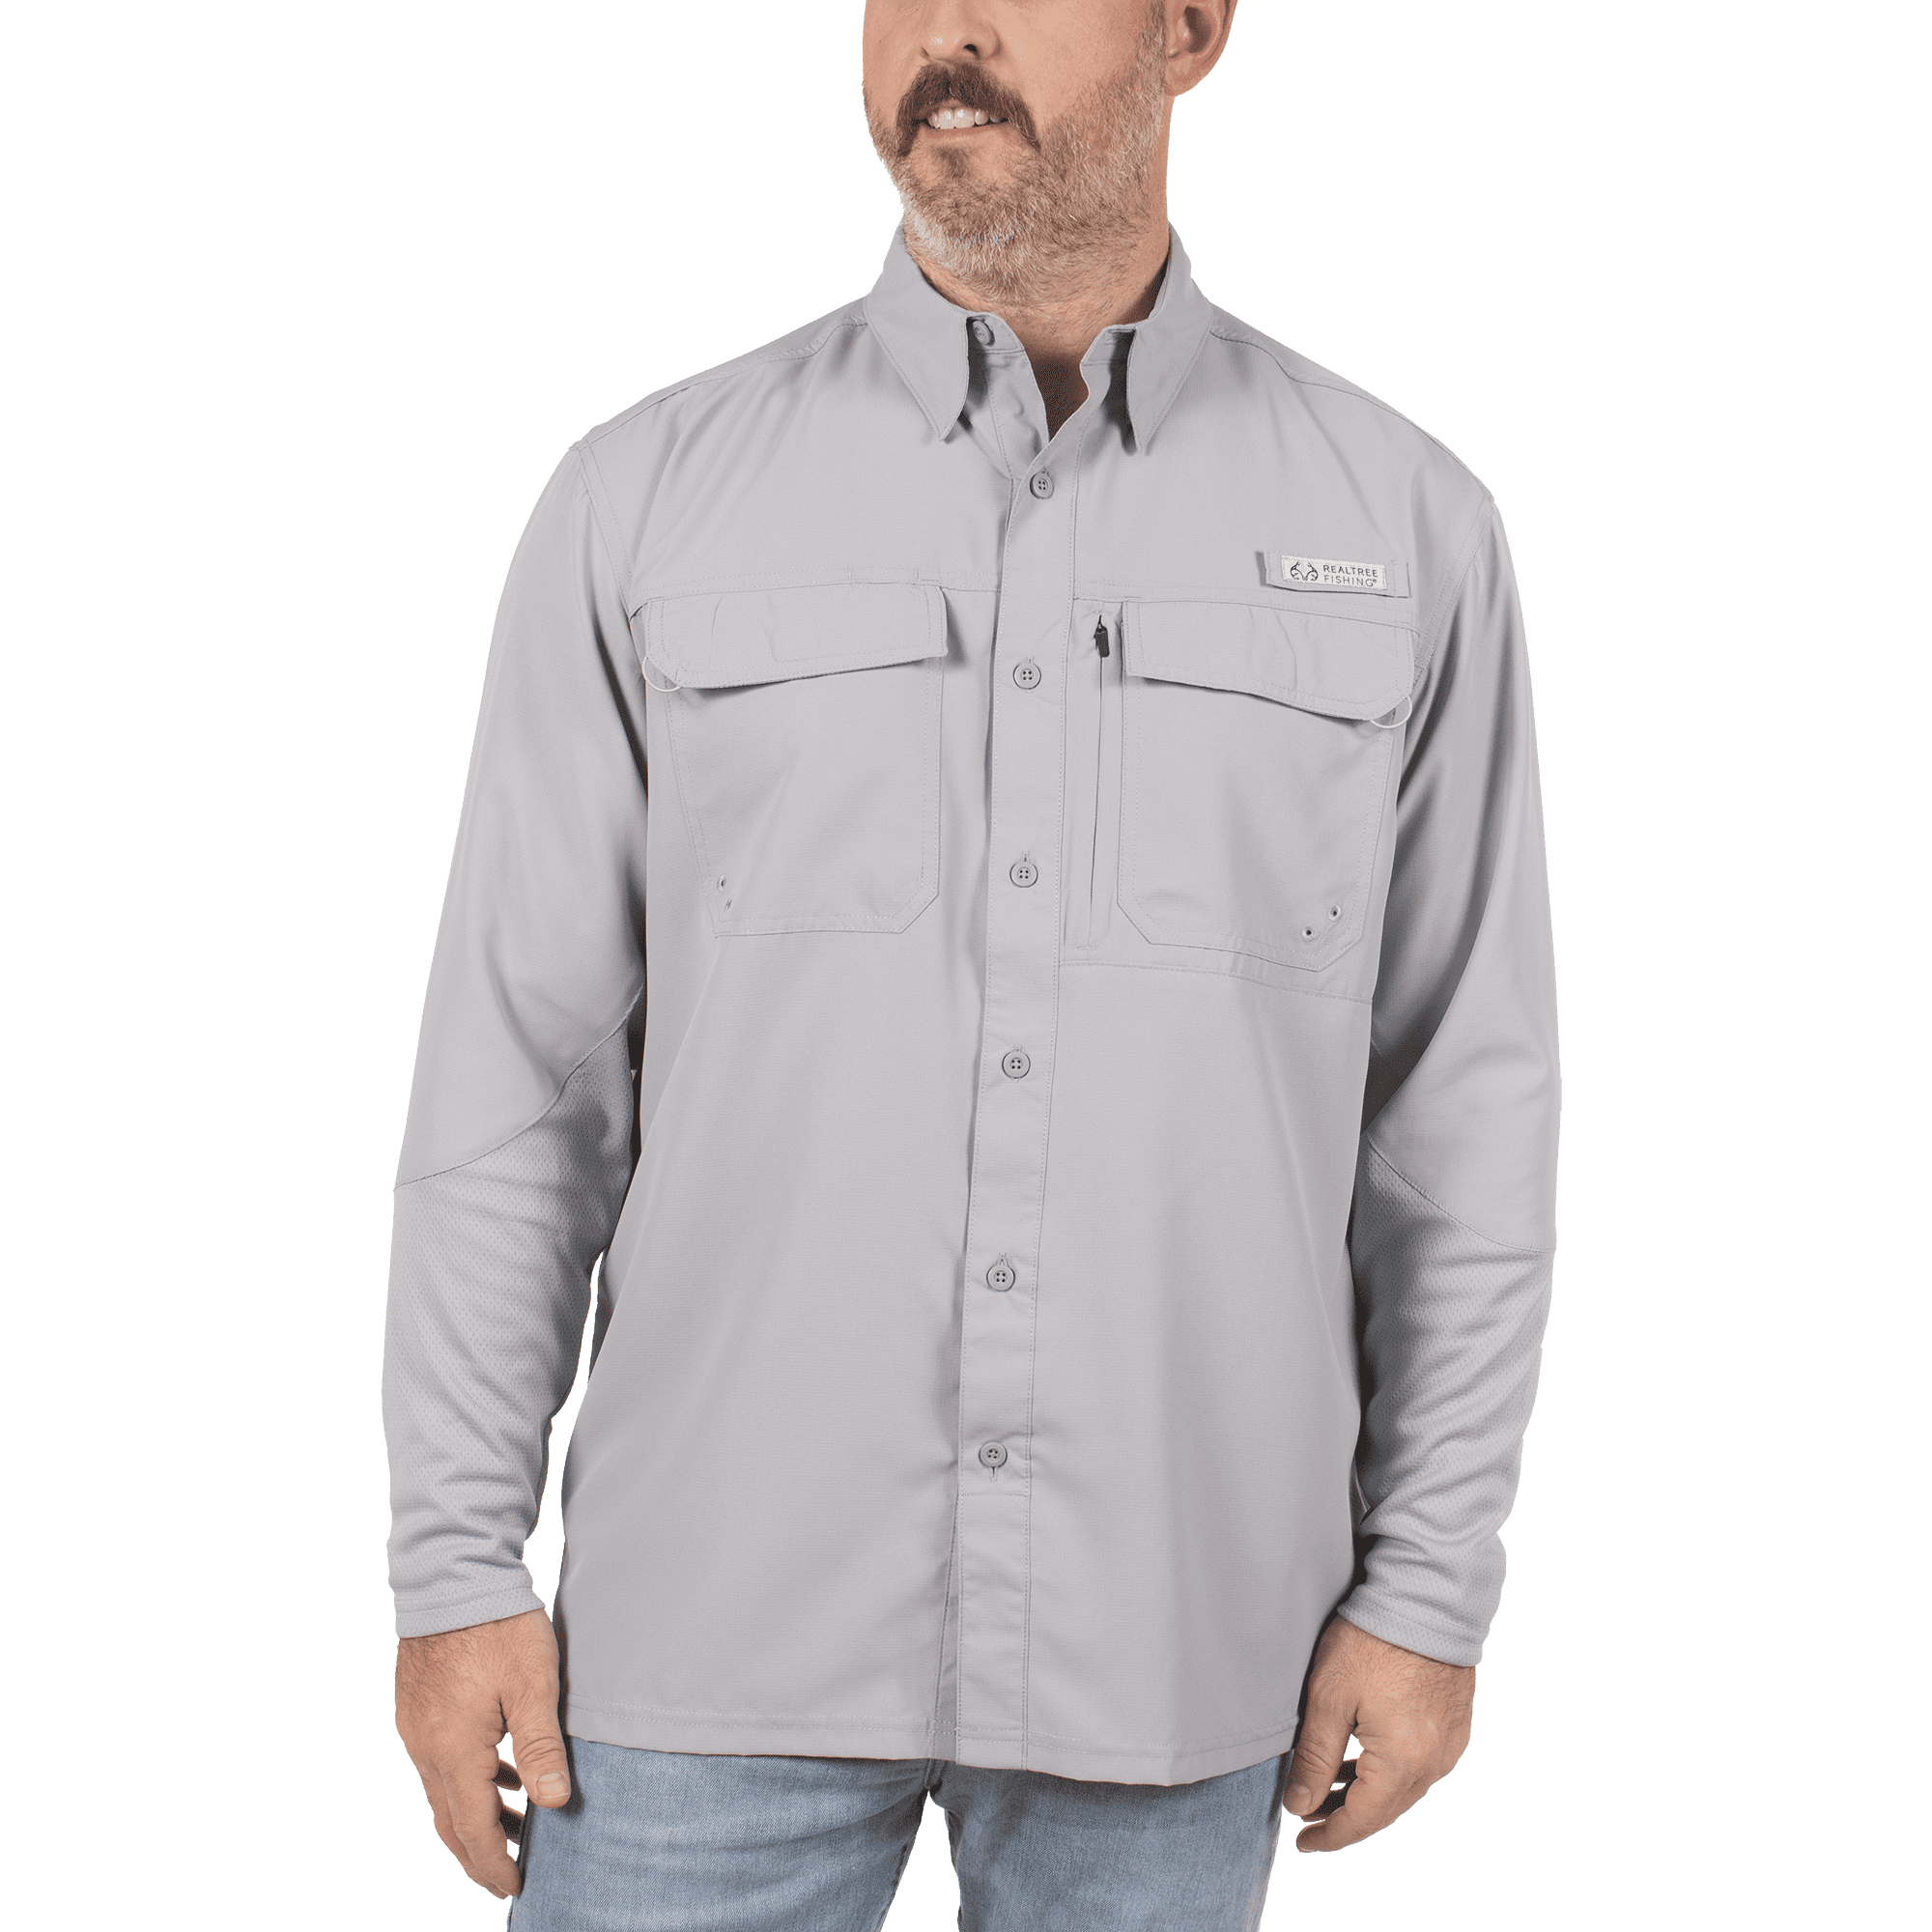 Realtree, Shirts, Nwt Realtree Mens Long Sleeve Premier Fishing Guide  Shirt Size Large